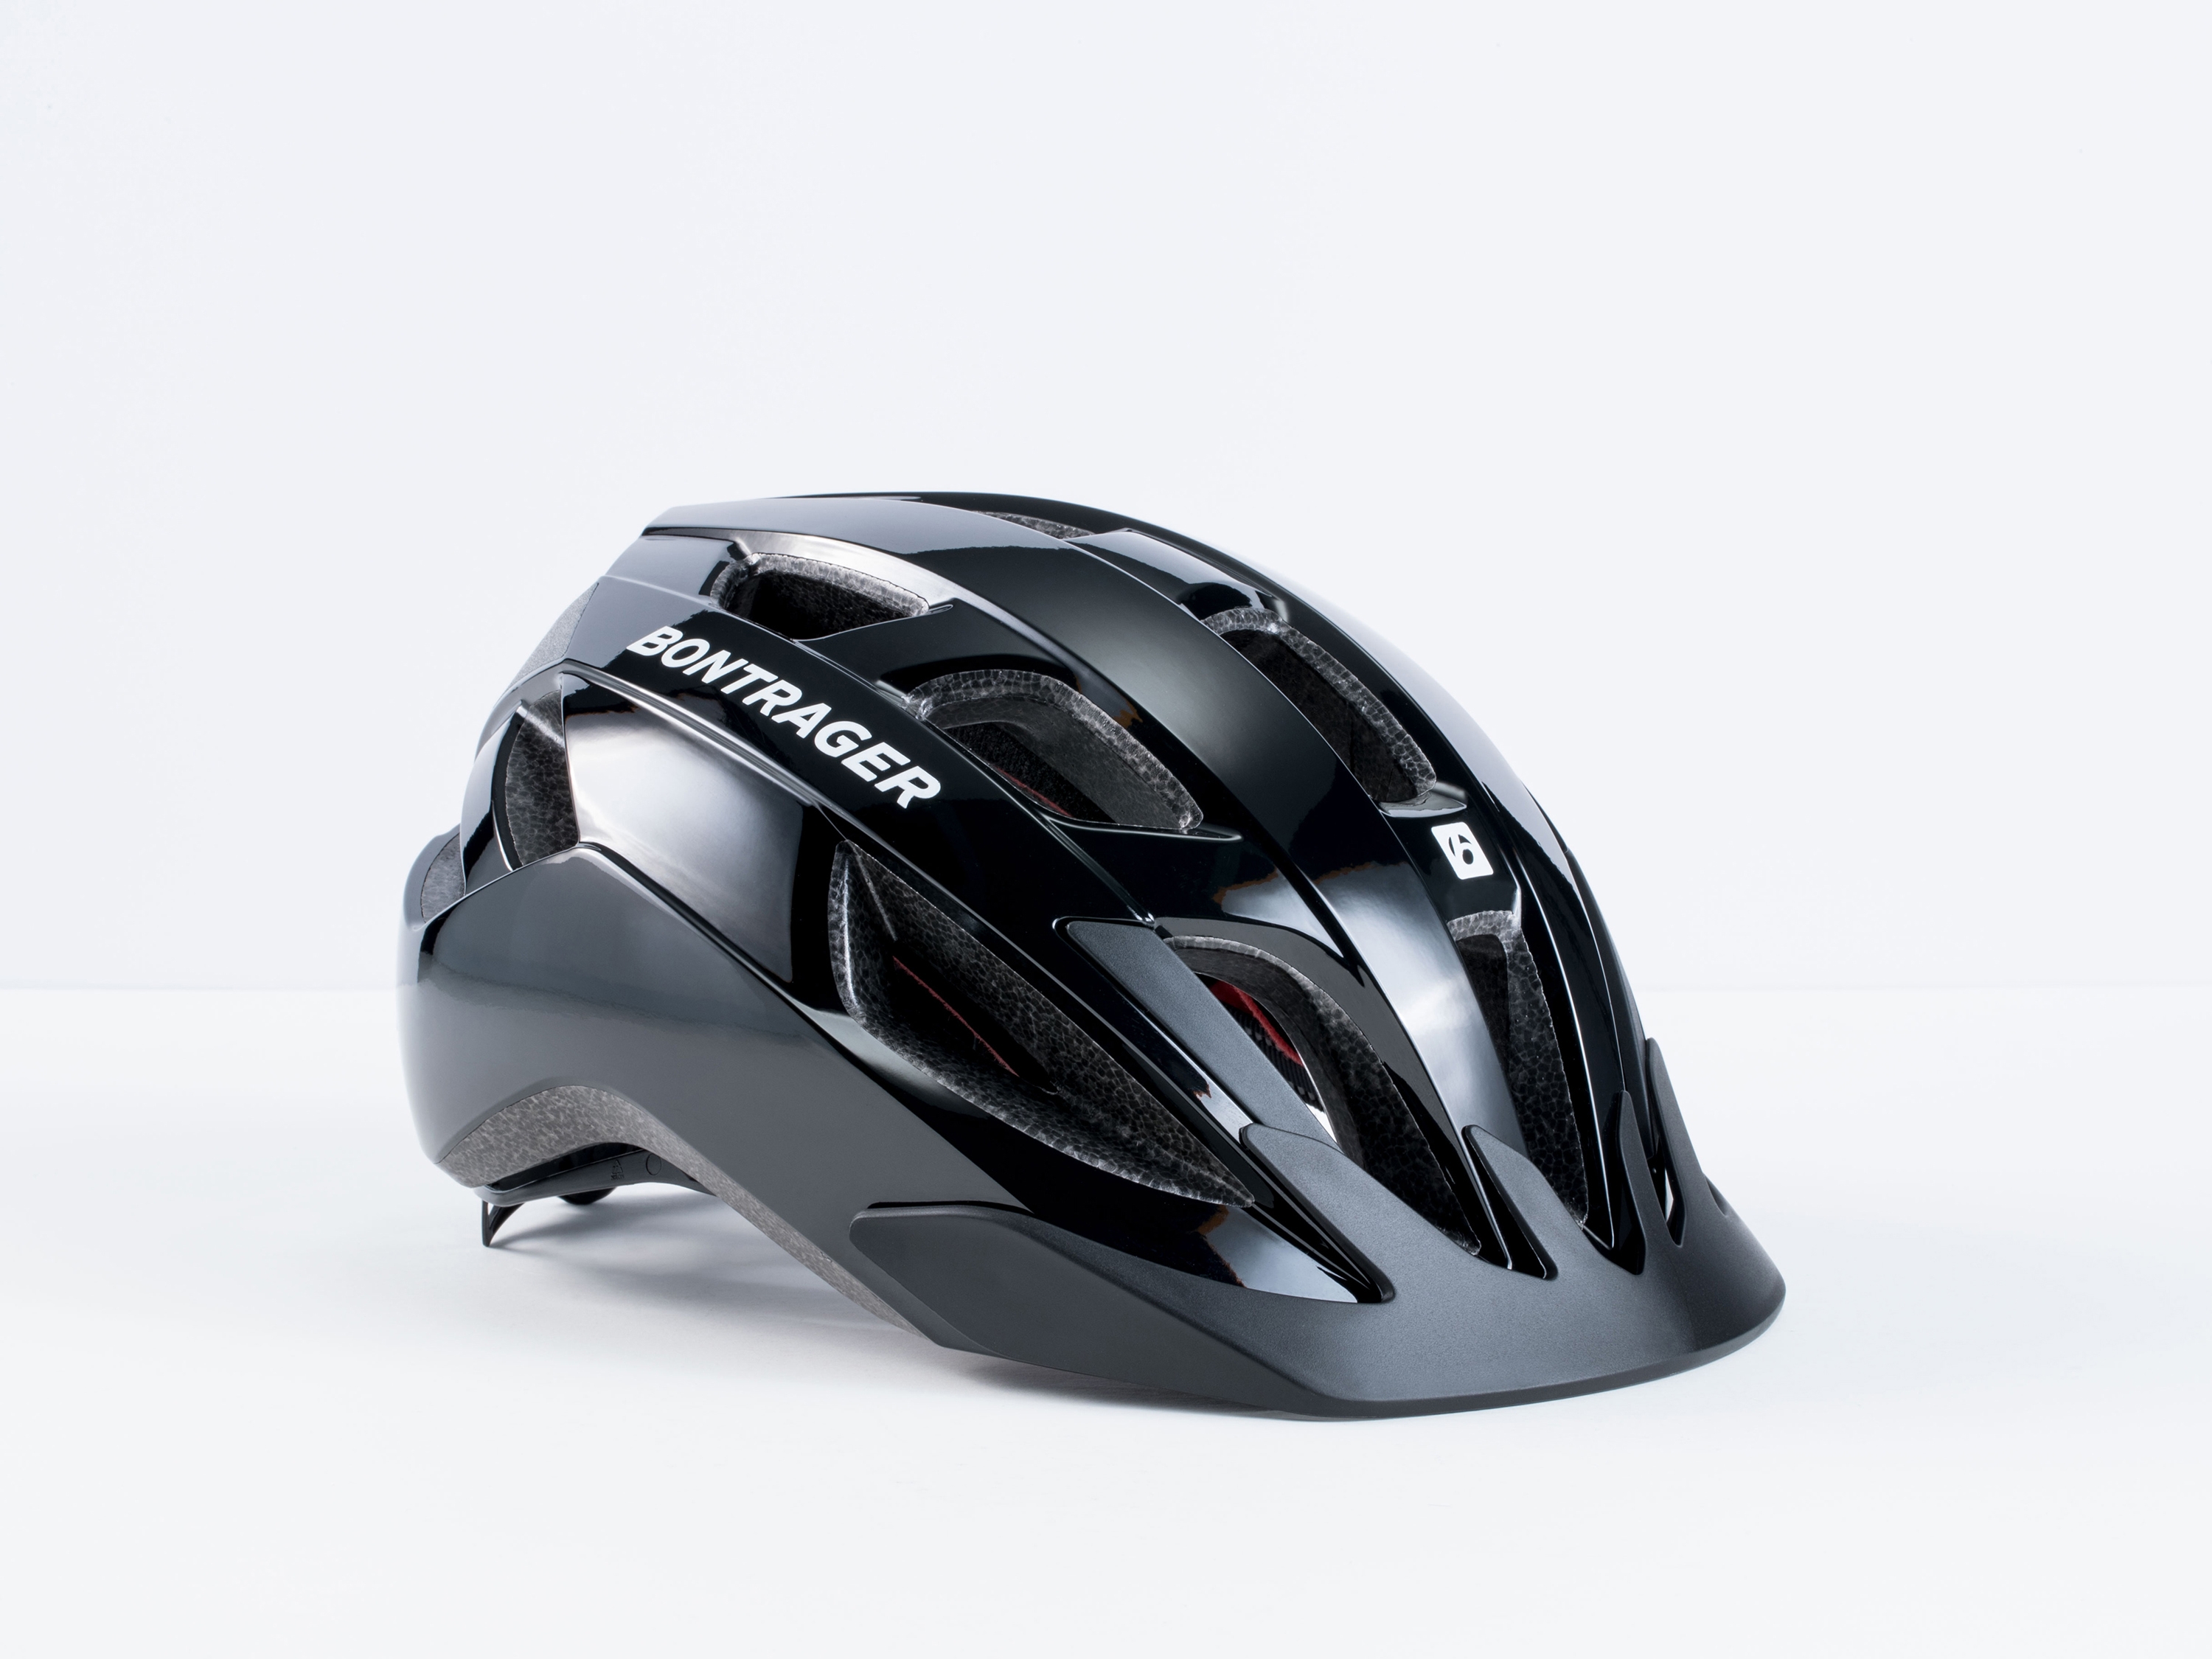 bontrager bike helmet